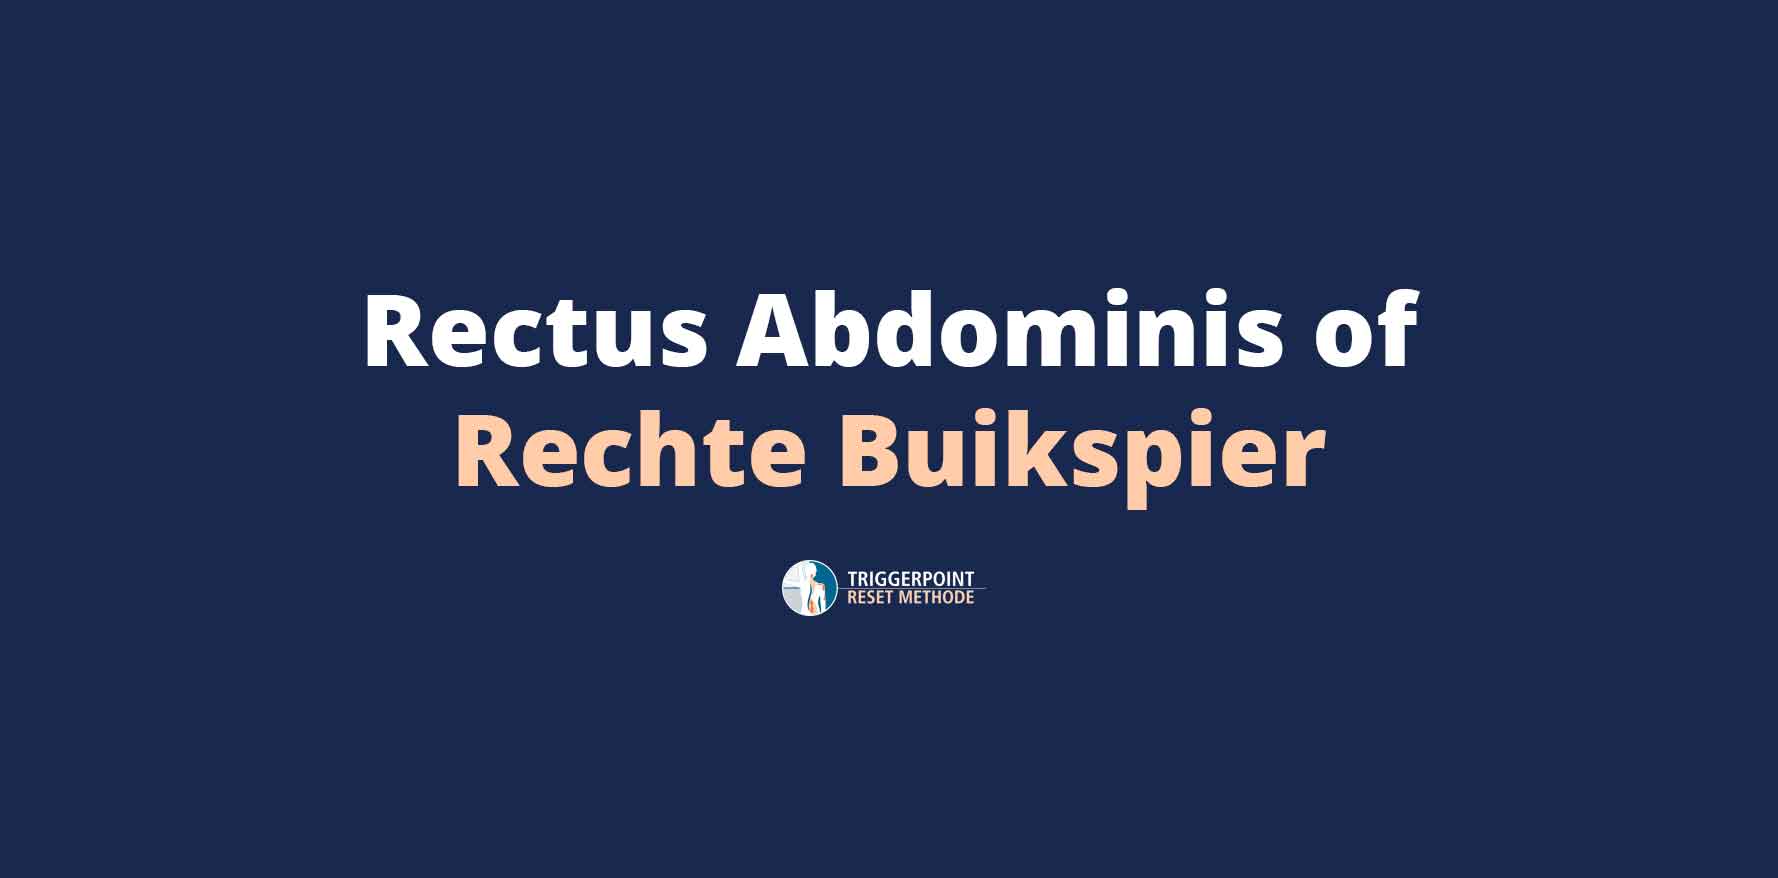 Rectus abdominis of Rechte Buikspier